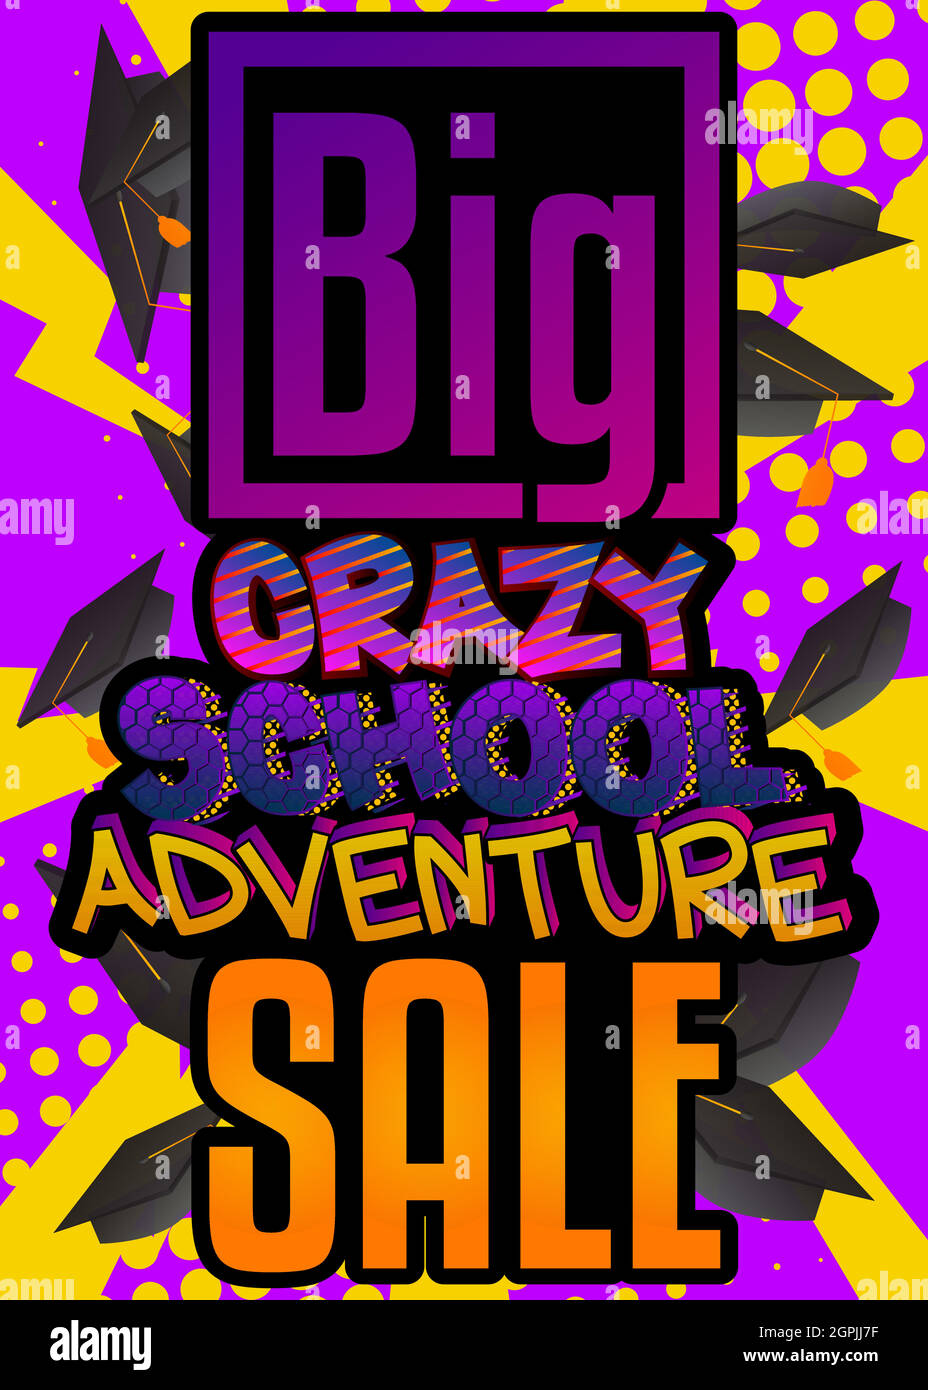 Big Crazy School Adventure sale Comic stile libro testo pubblicitario. Illustrazione Vettoriale